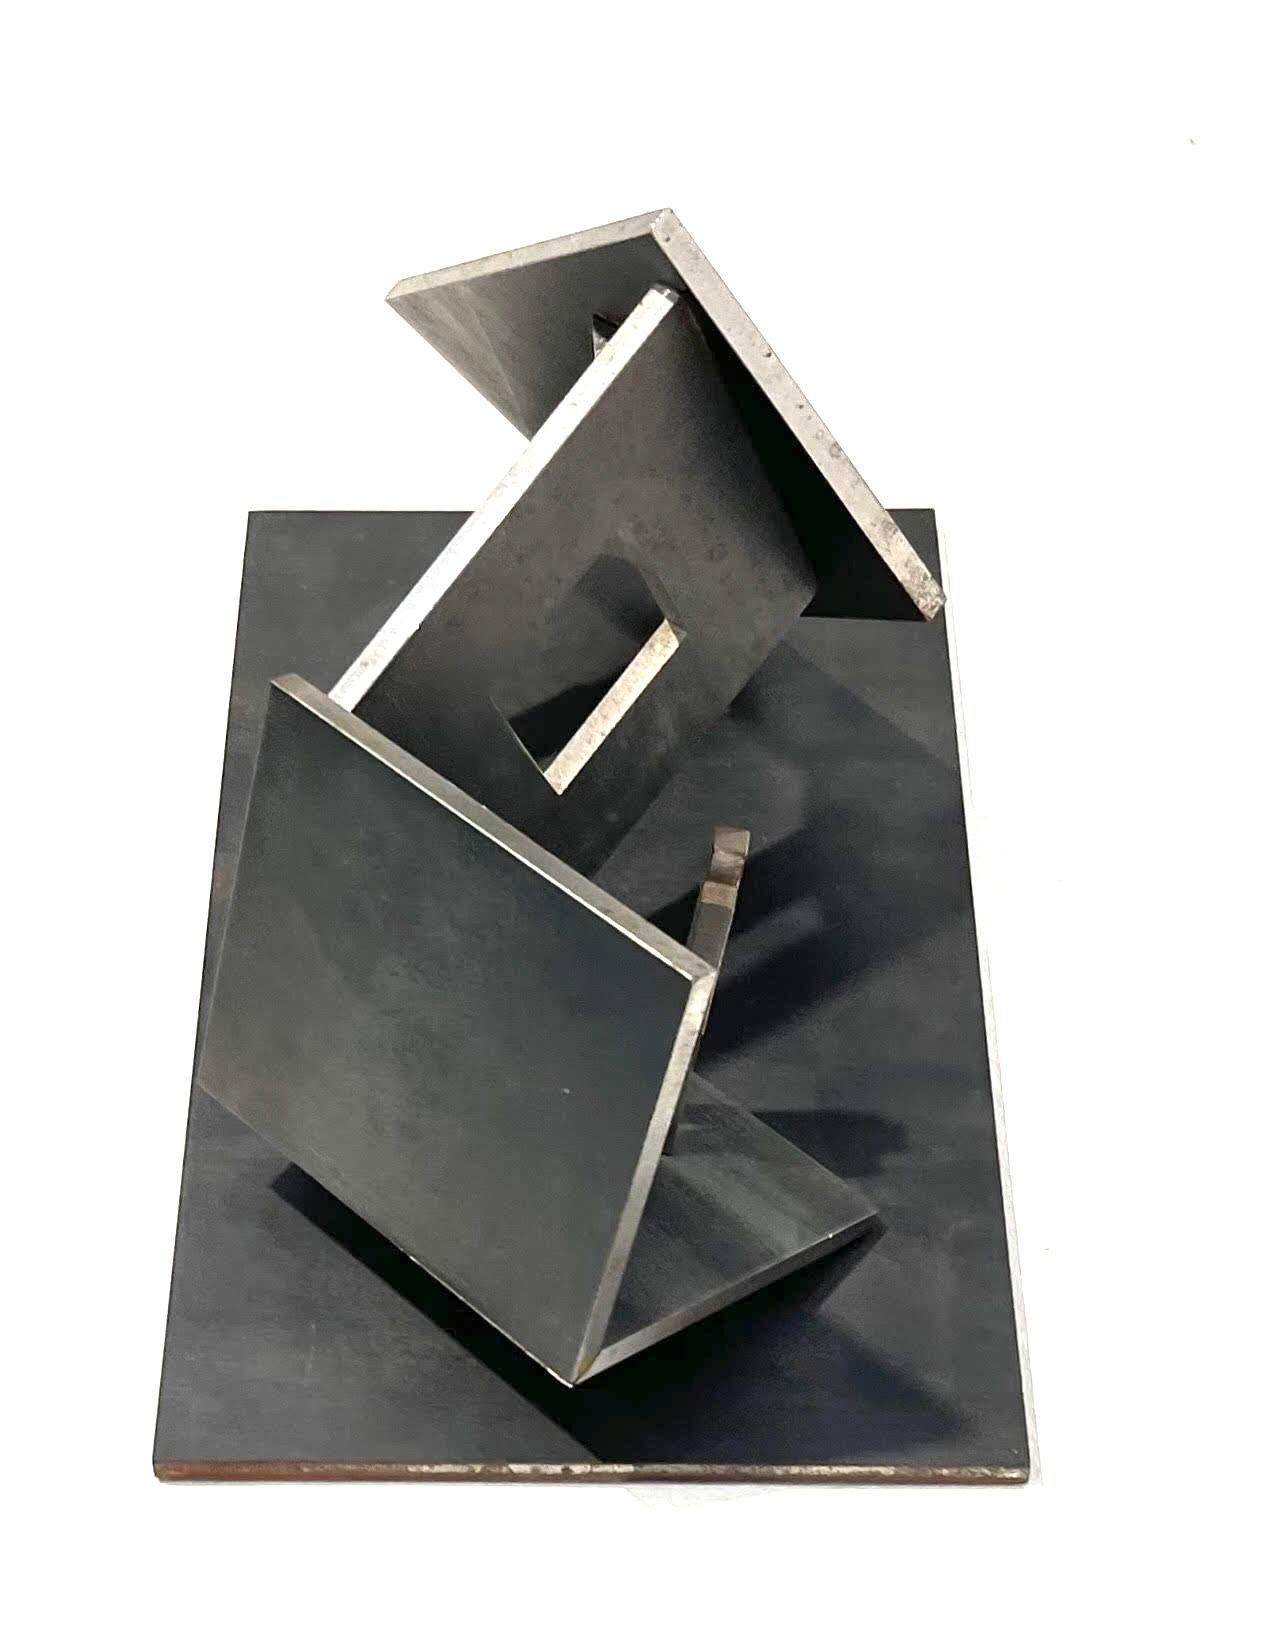 Buky Schwartz 
Maison en mouvement, 1986
Acier soudé
10 1/2 × 6 1/4 × 6 1/2 pouces
Il s'agit d'une œuvre unique
La sculpture est une maison renversée avec deux figures humaines. Sa conception est ingénieuse, ce qui peut être apprécié lorsque la